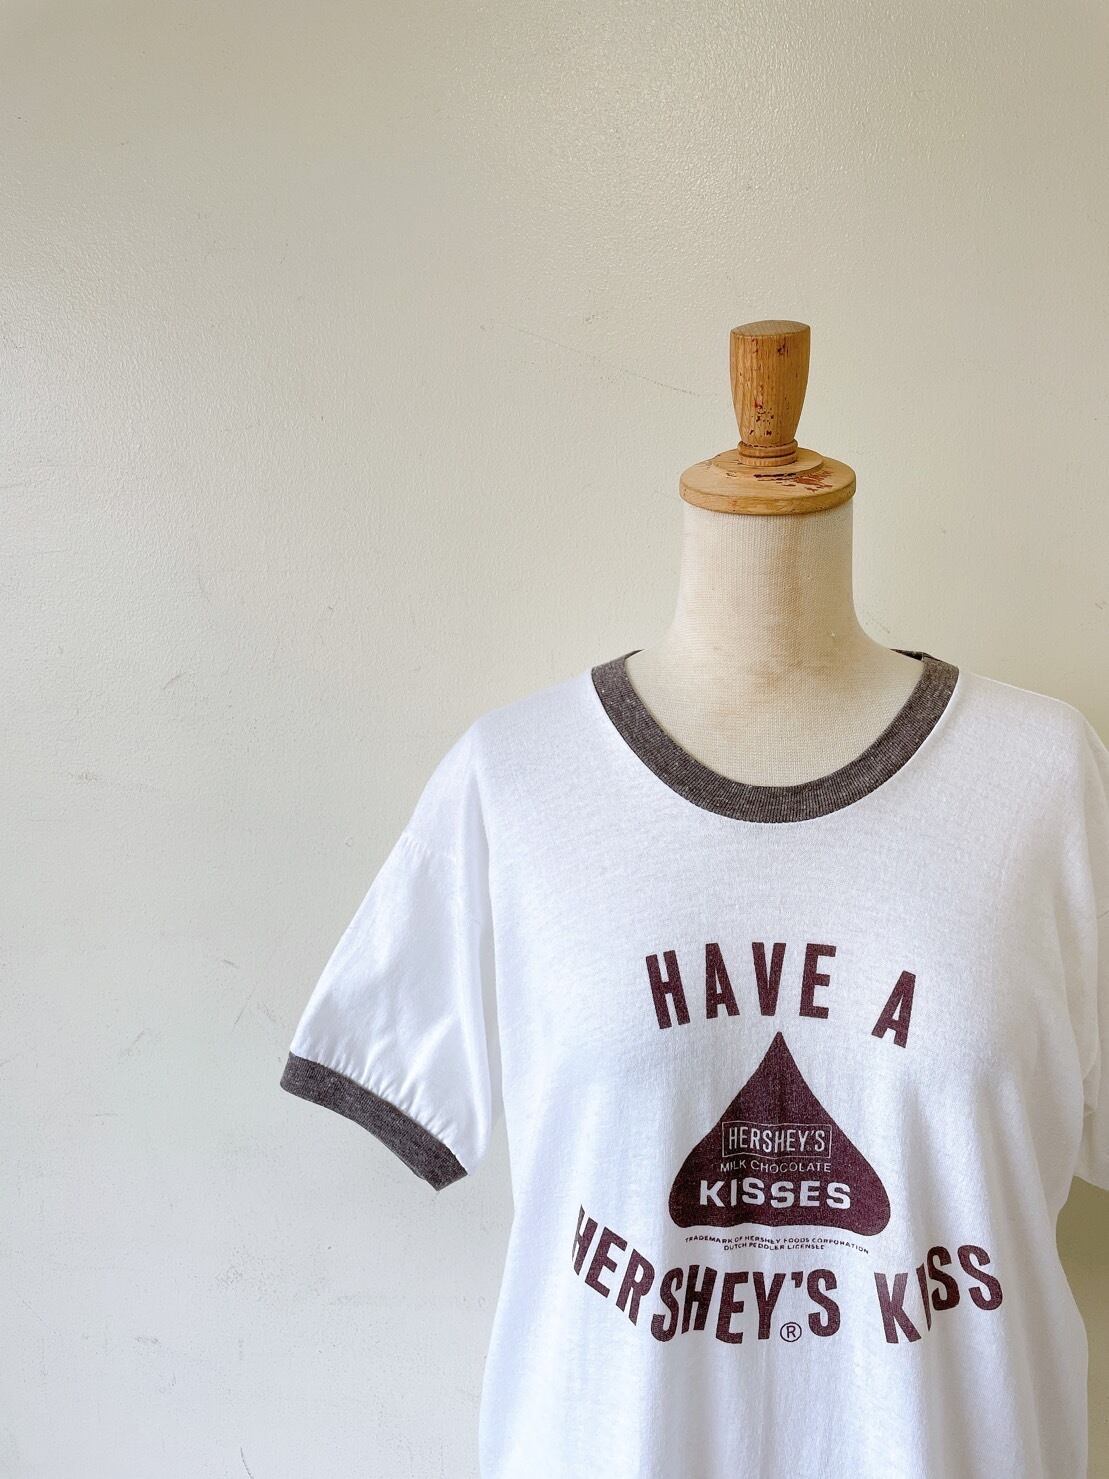 年代 Hershey’s ヴィンテージリンガーTシャツ USA製   Used & Vintage Clothing VALONLanp  powered by BASE